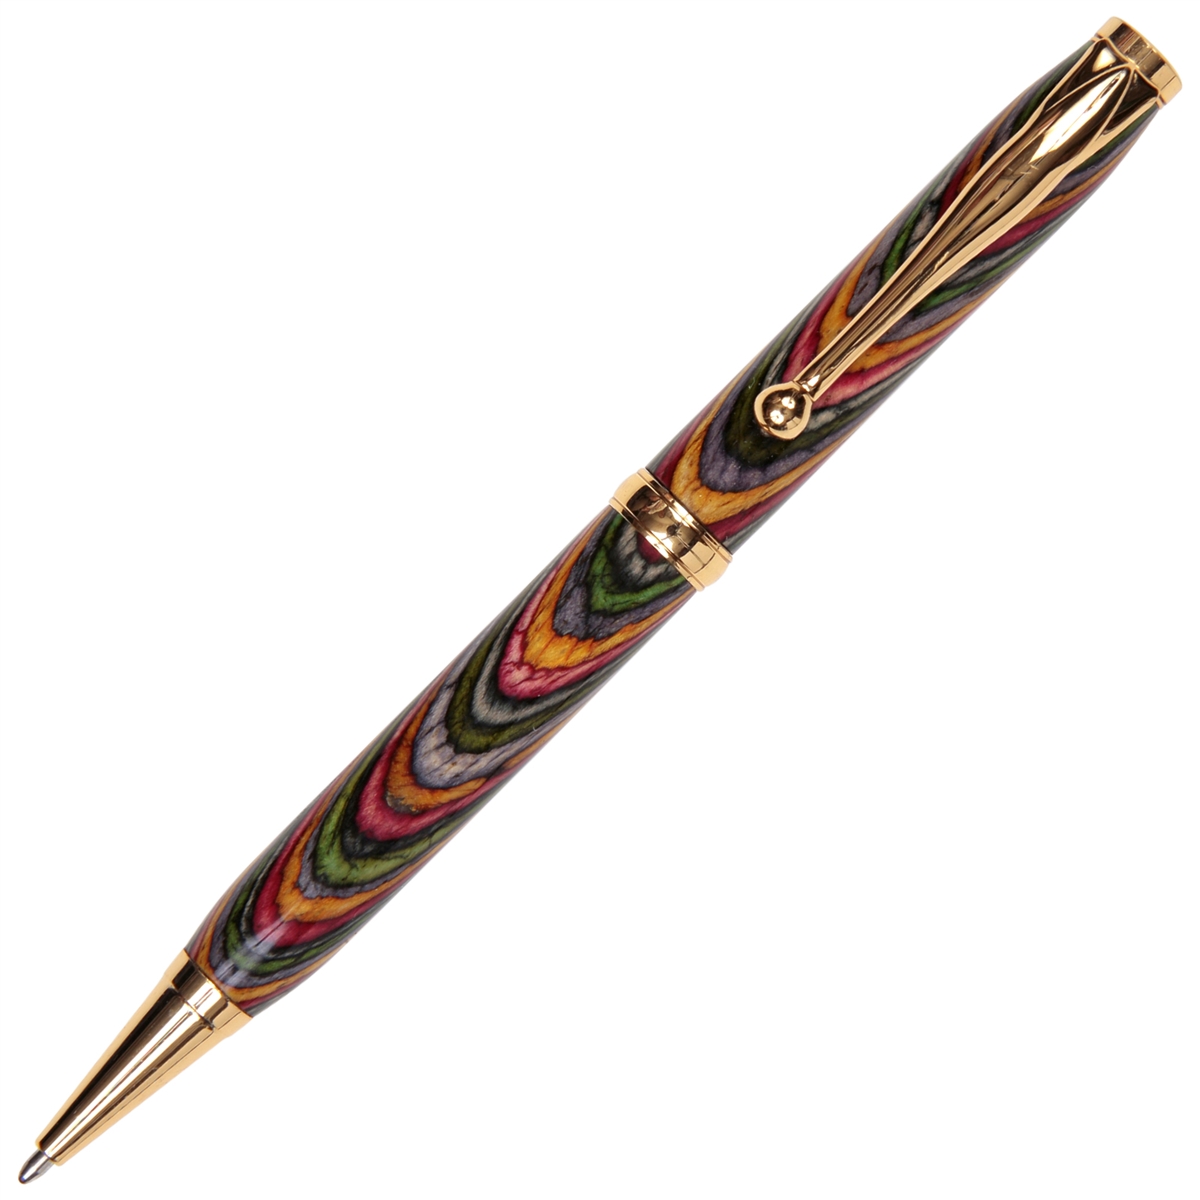 Oasis Color Grain Comfort Twist Pen - Lanier Pens